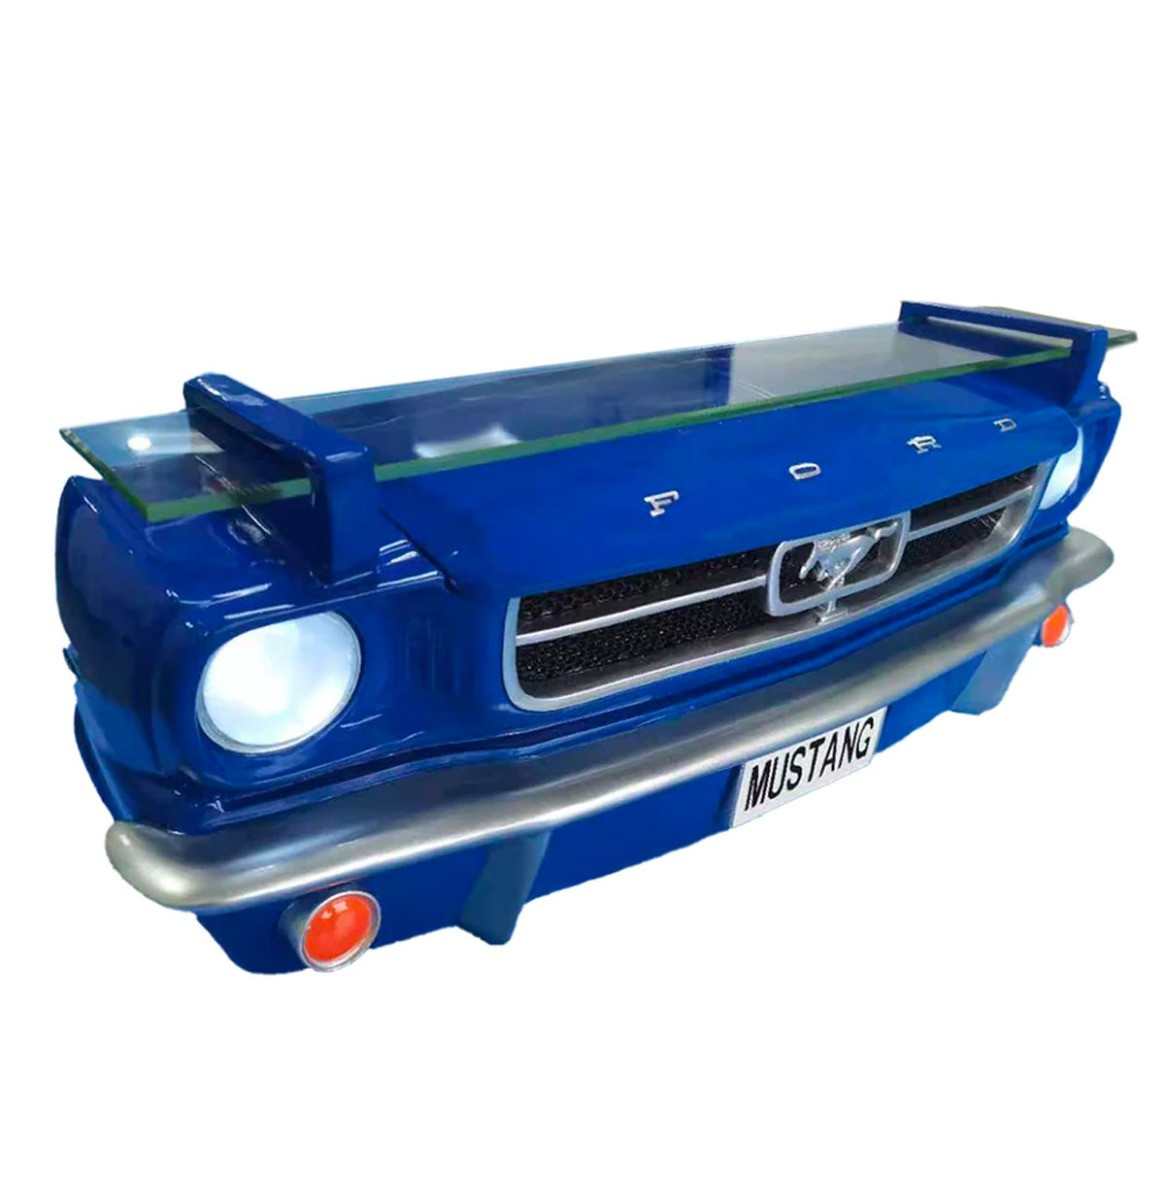 BINNENKORT: 1965 Ford Mustang Voorkant Wandplank Met Verlichting - Blauw